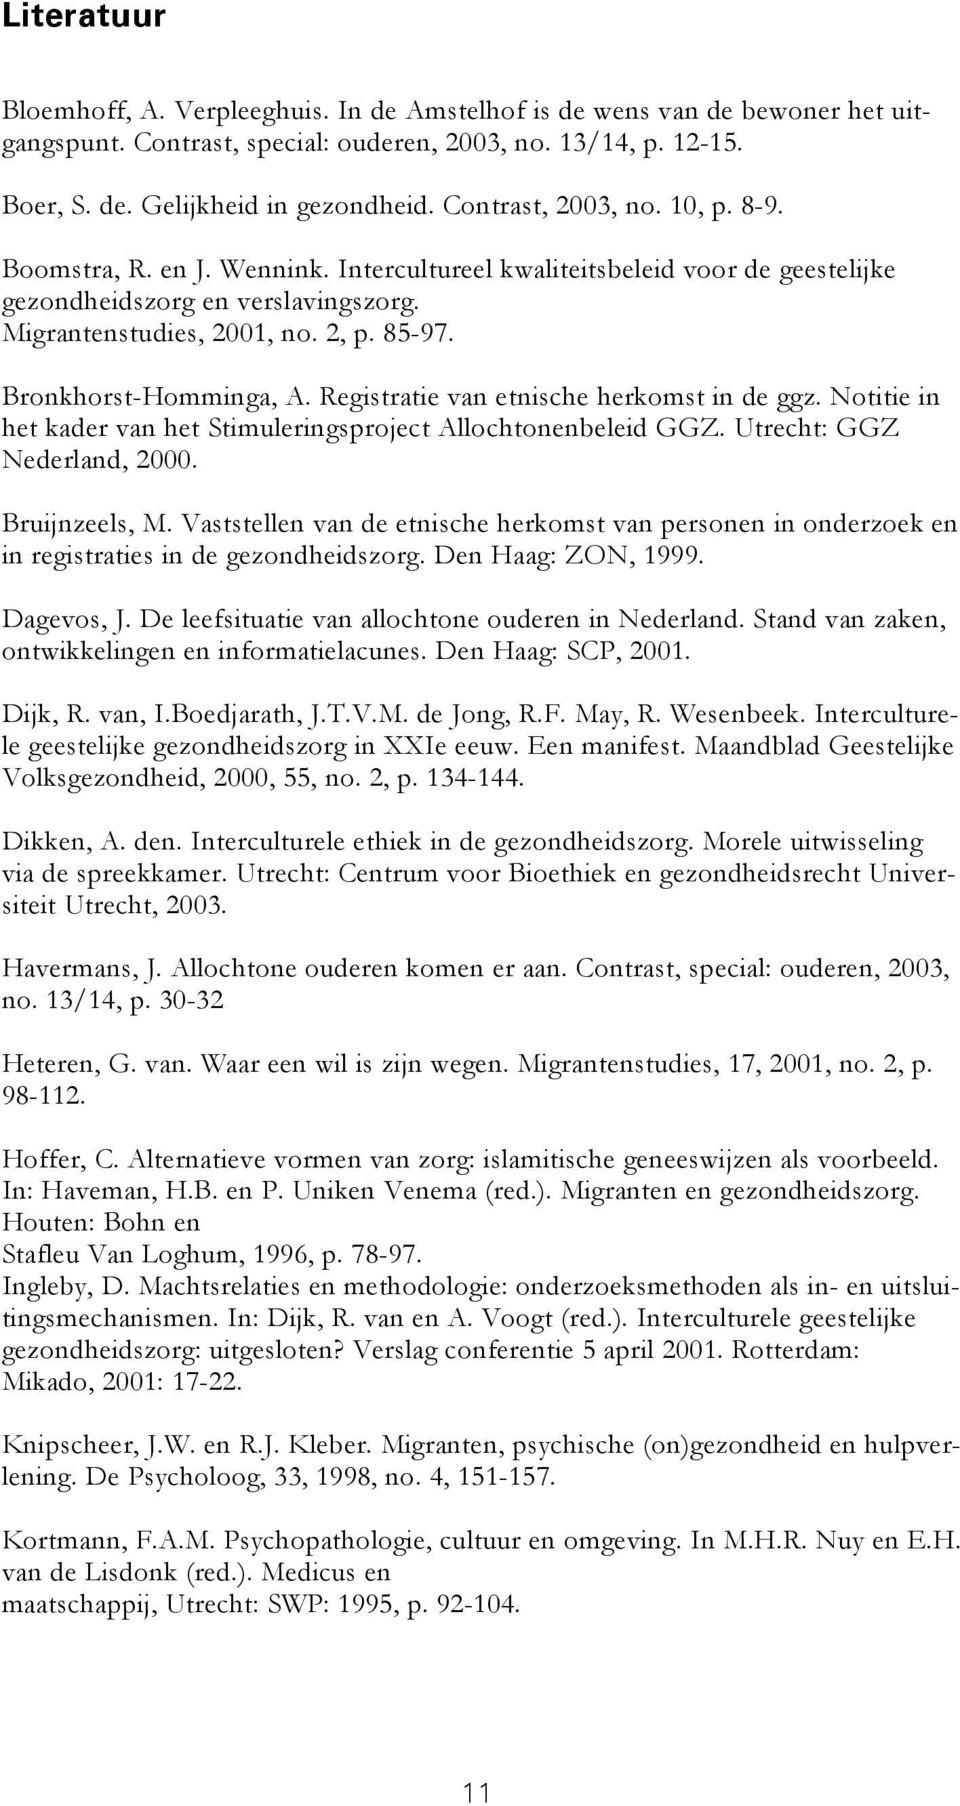 Bronkhorst-Homminga, A. Registratie van etnische herkomst in de ggz. Notitie in het kader van het Stimuleringsproject Allochtonenbeleid GGZ. Utrecht: GGZ Nederland, 2000. Bruijnzeels, M.